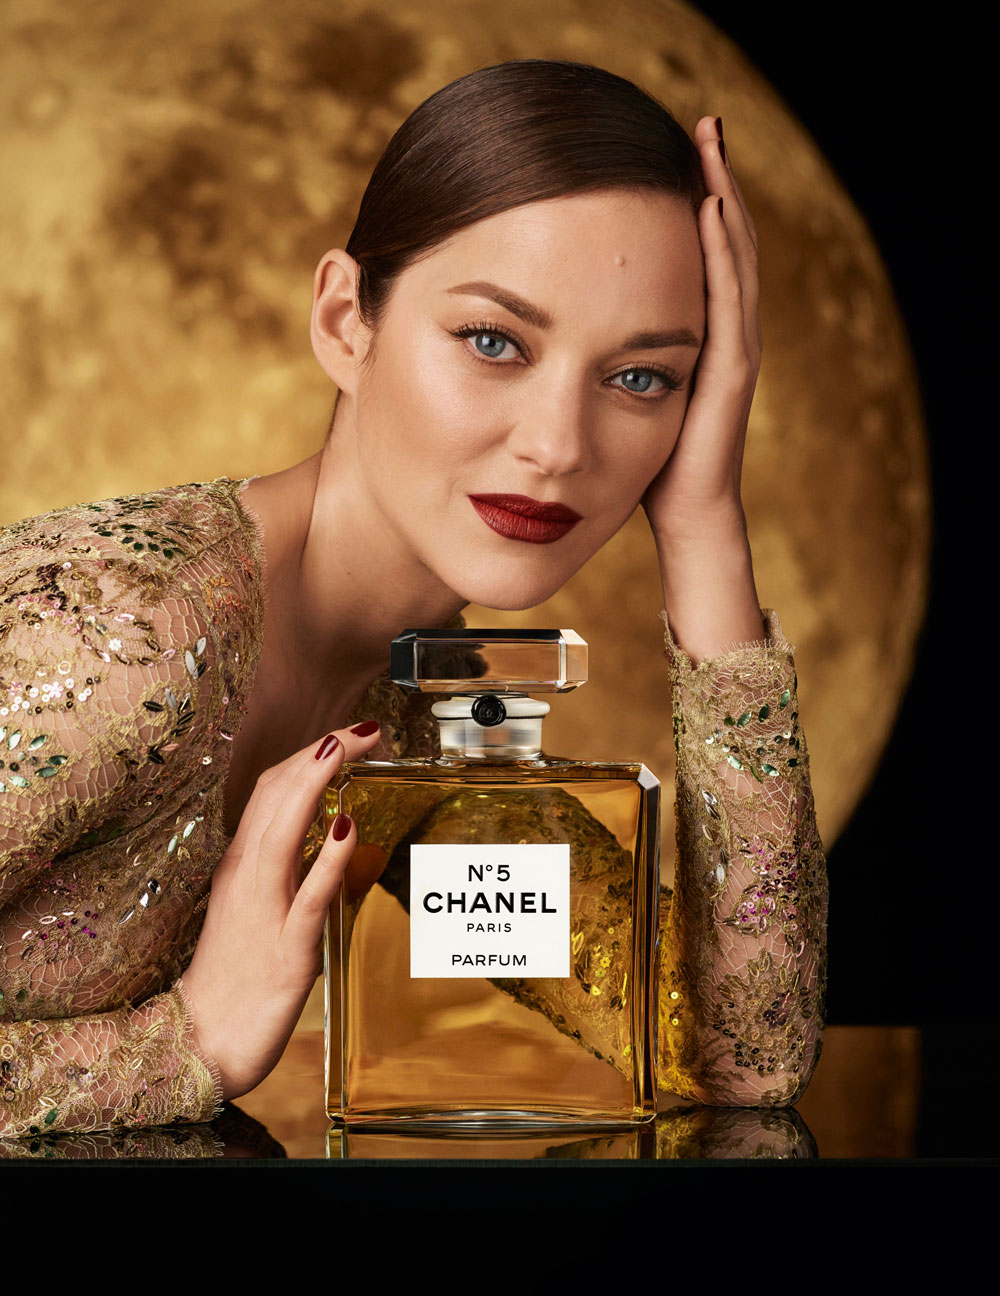 Auf sonrisa gibt es exklusive Blicke hinter die Kulissen der neuen Kampagne für Chanel N° 5 mit Marion Cotillard.